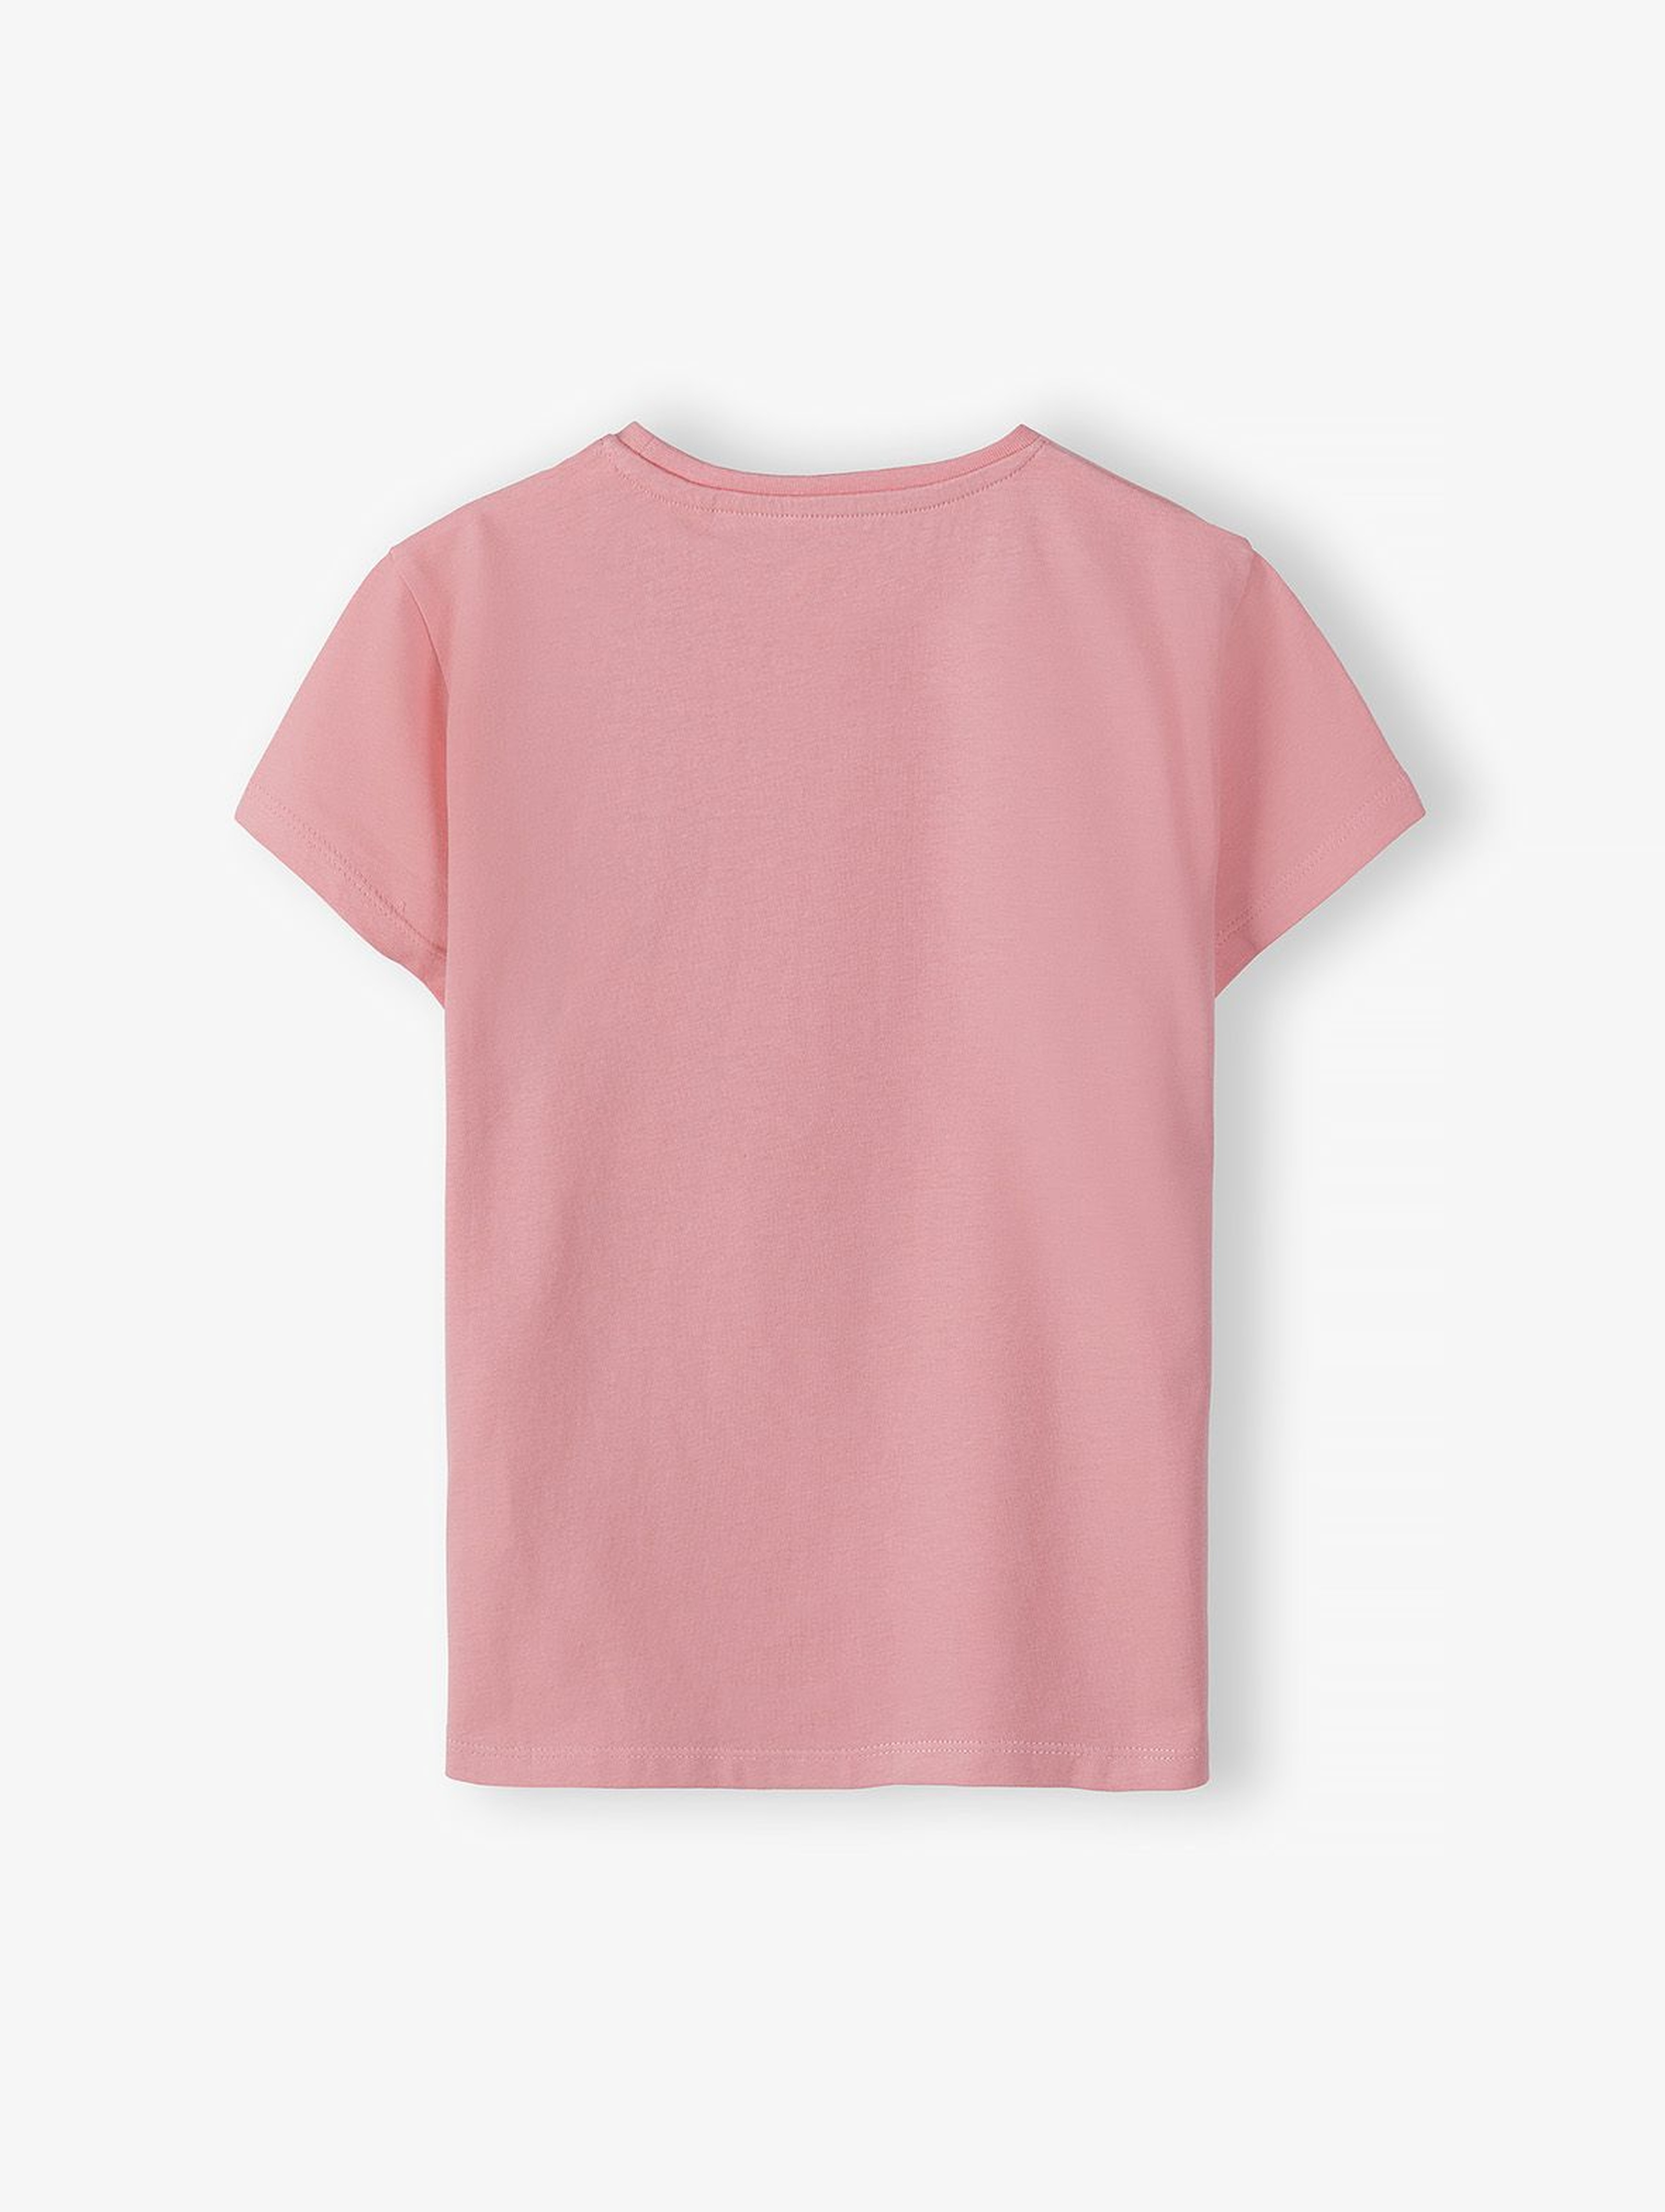 Bawełniany różowy t-shirt dziewczęcy z ozdobną aplikacją